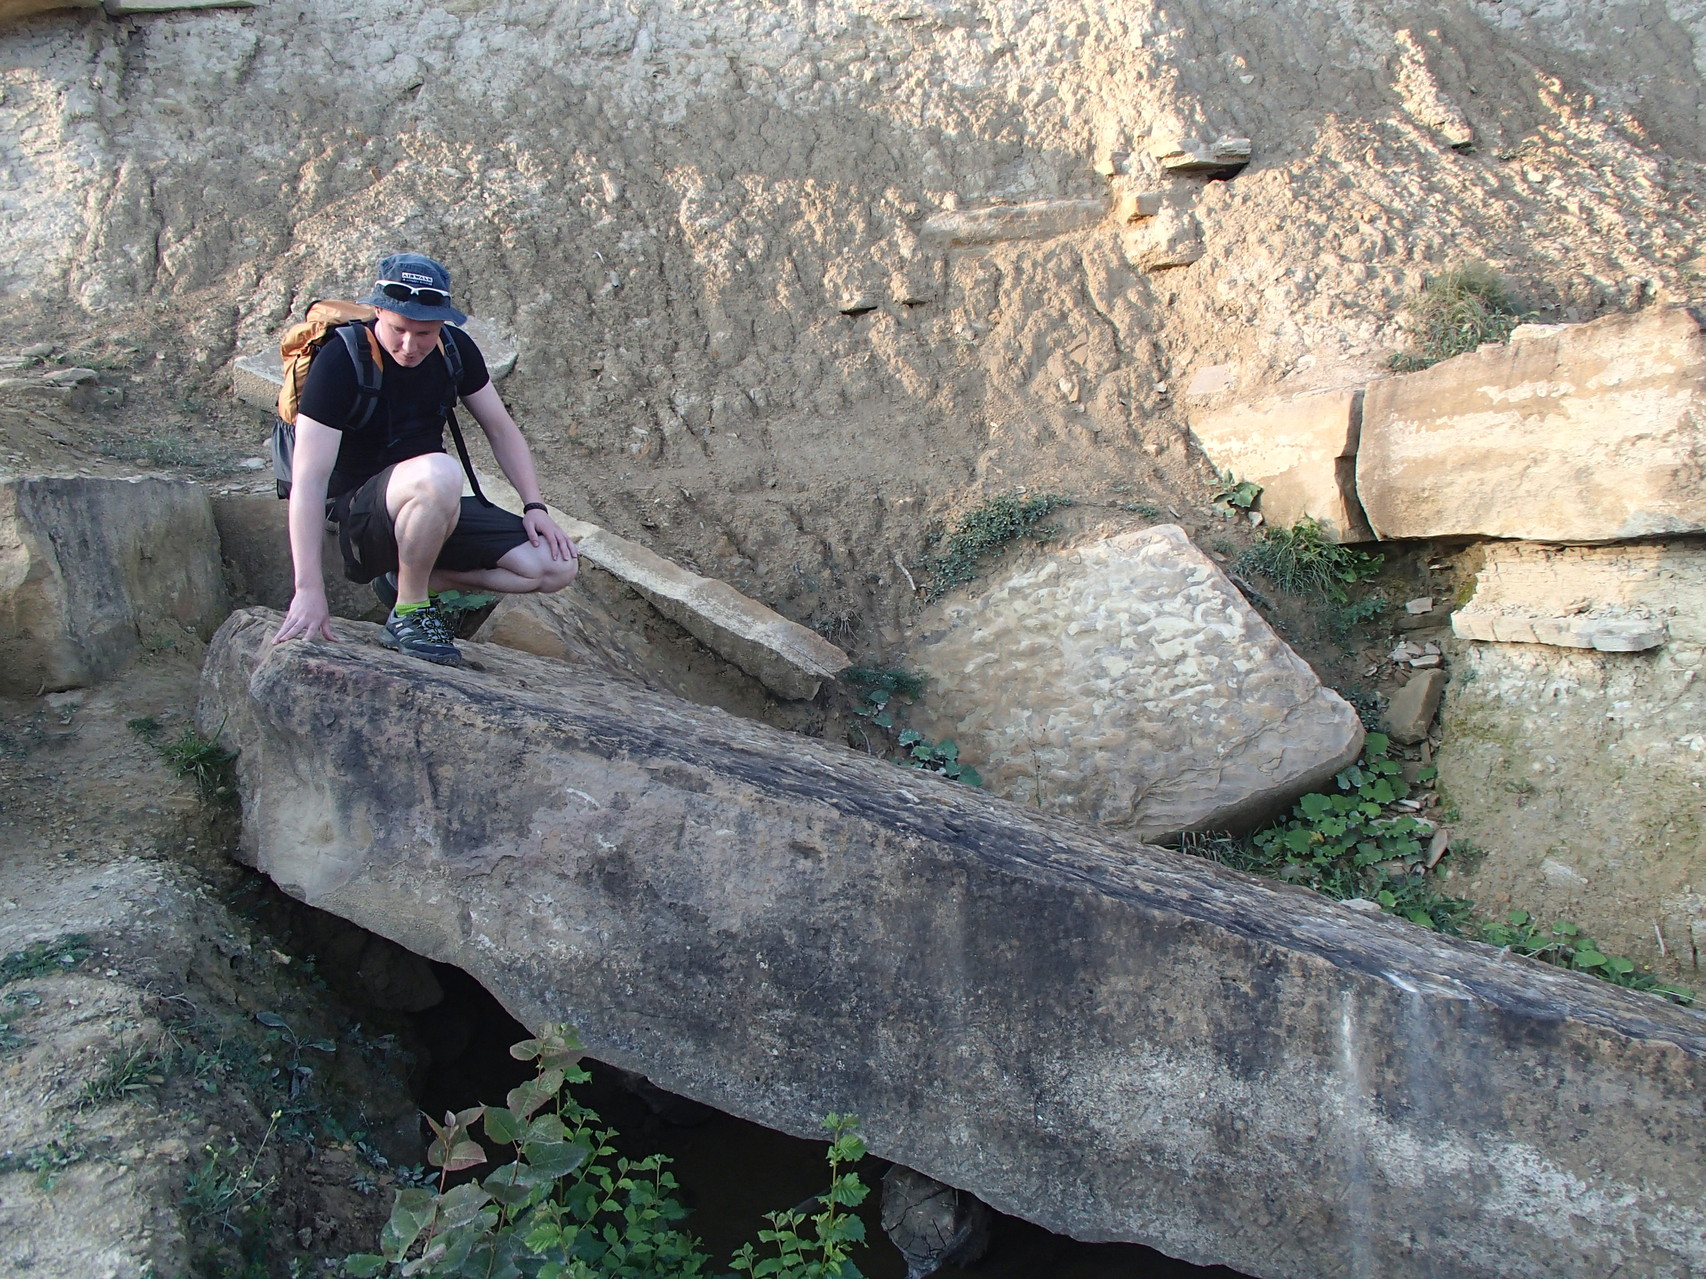 Ein gefallener Megalith. Dieser wurde auf über 20 Tonnen datiert. Welche vorgeschichtliche Kultur war in der Lage, solche Steine dorthin zu bewegen?